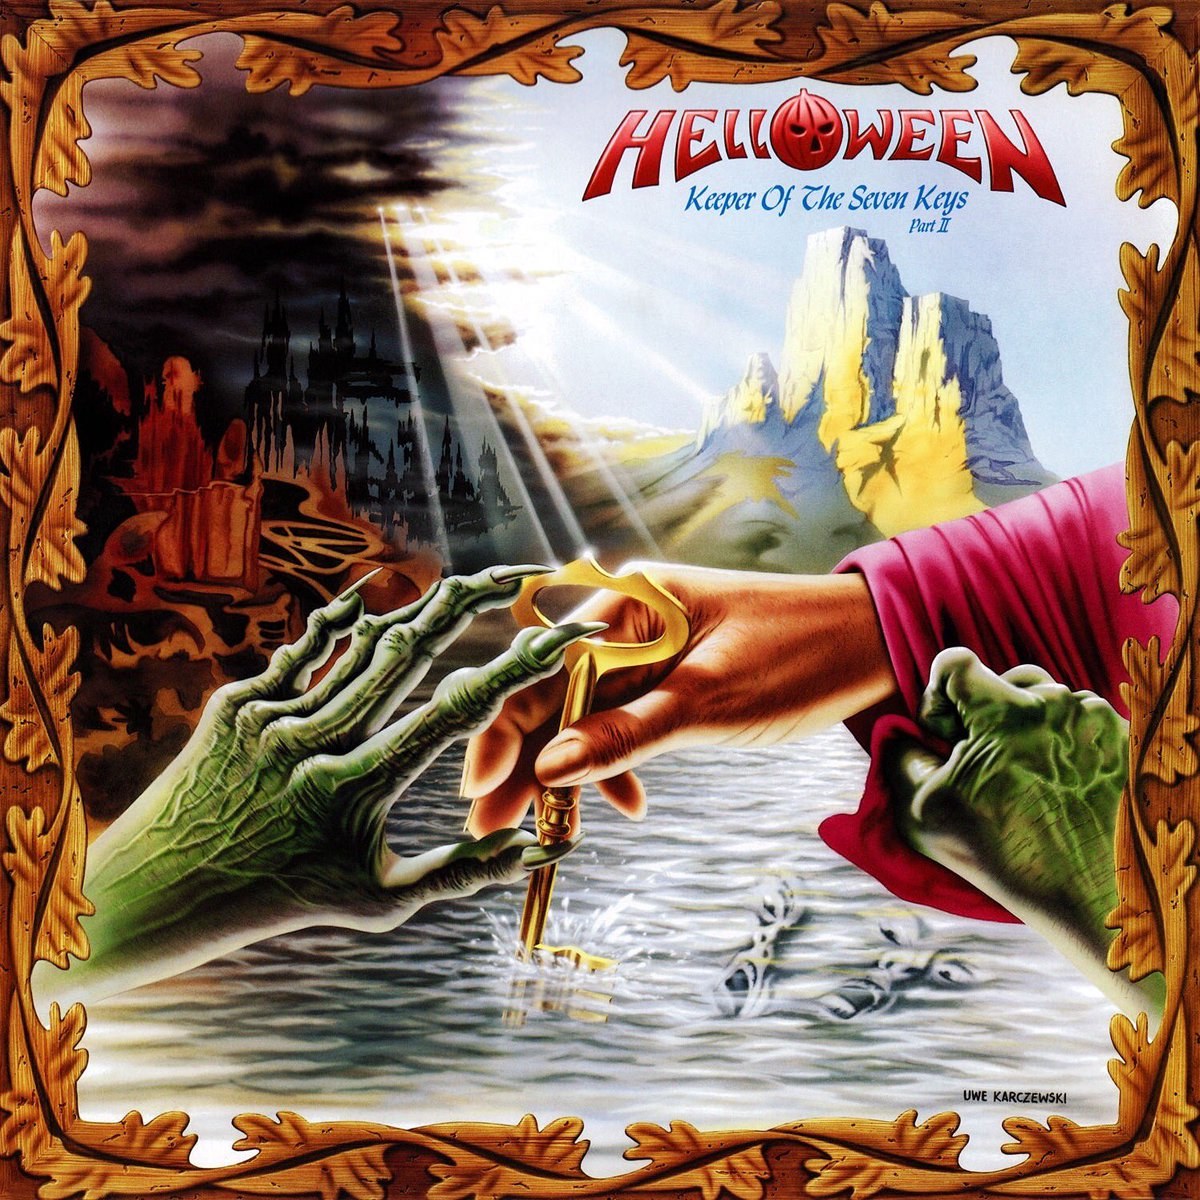 Cover von "Keeper of the Seven Keys, Pt. 2" von Helloween